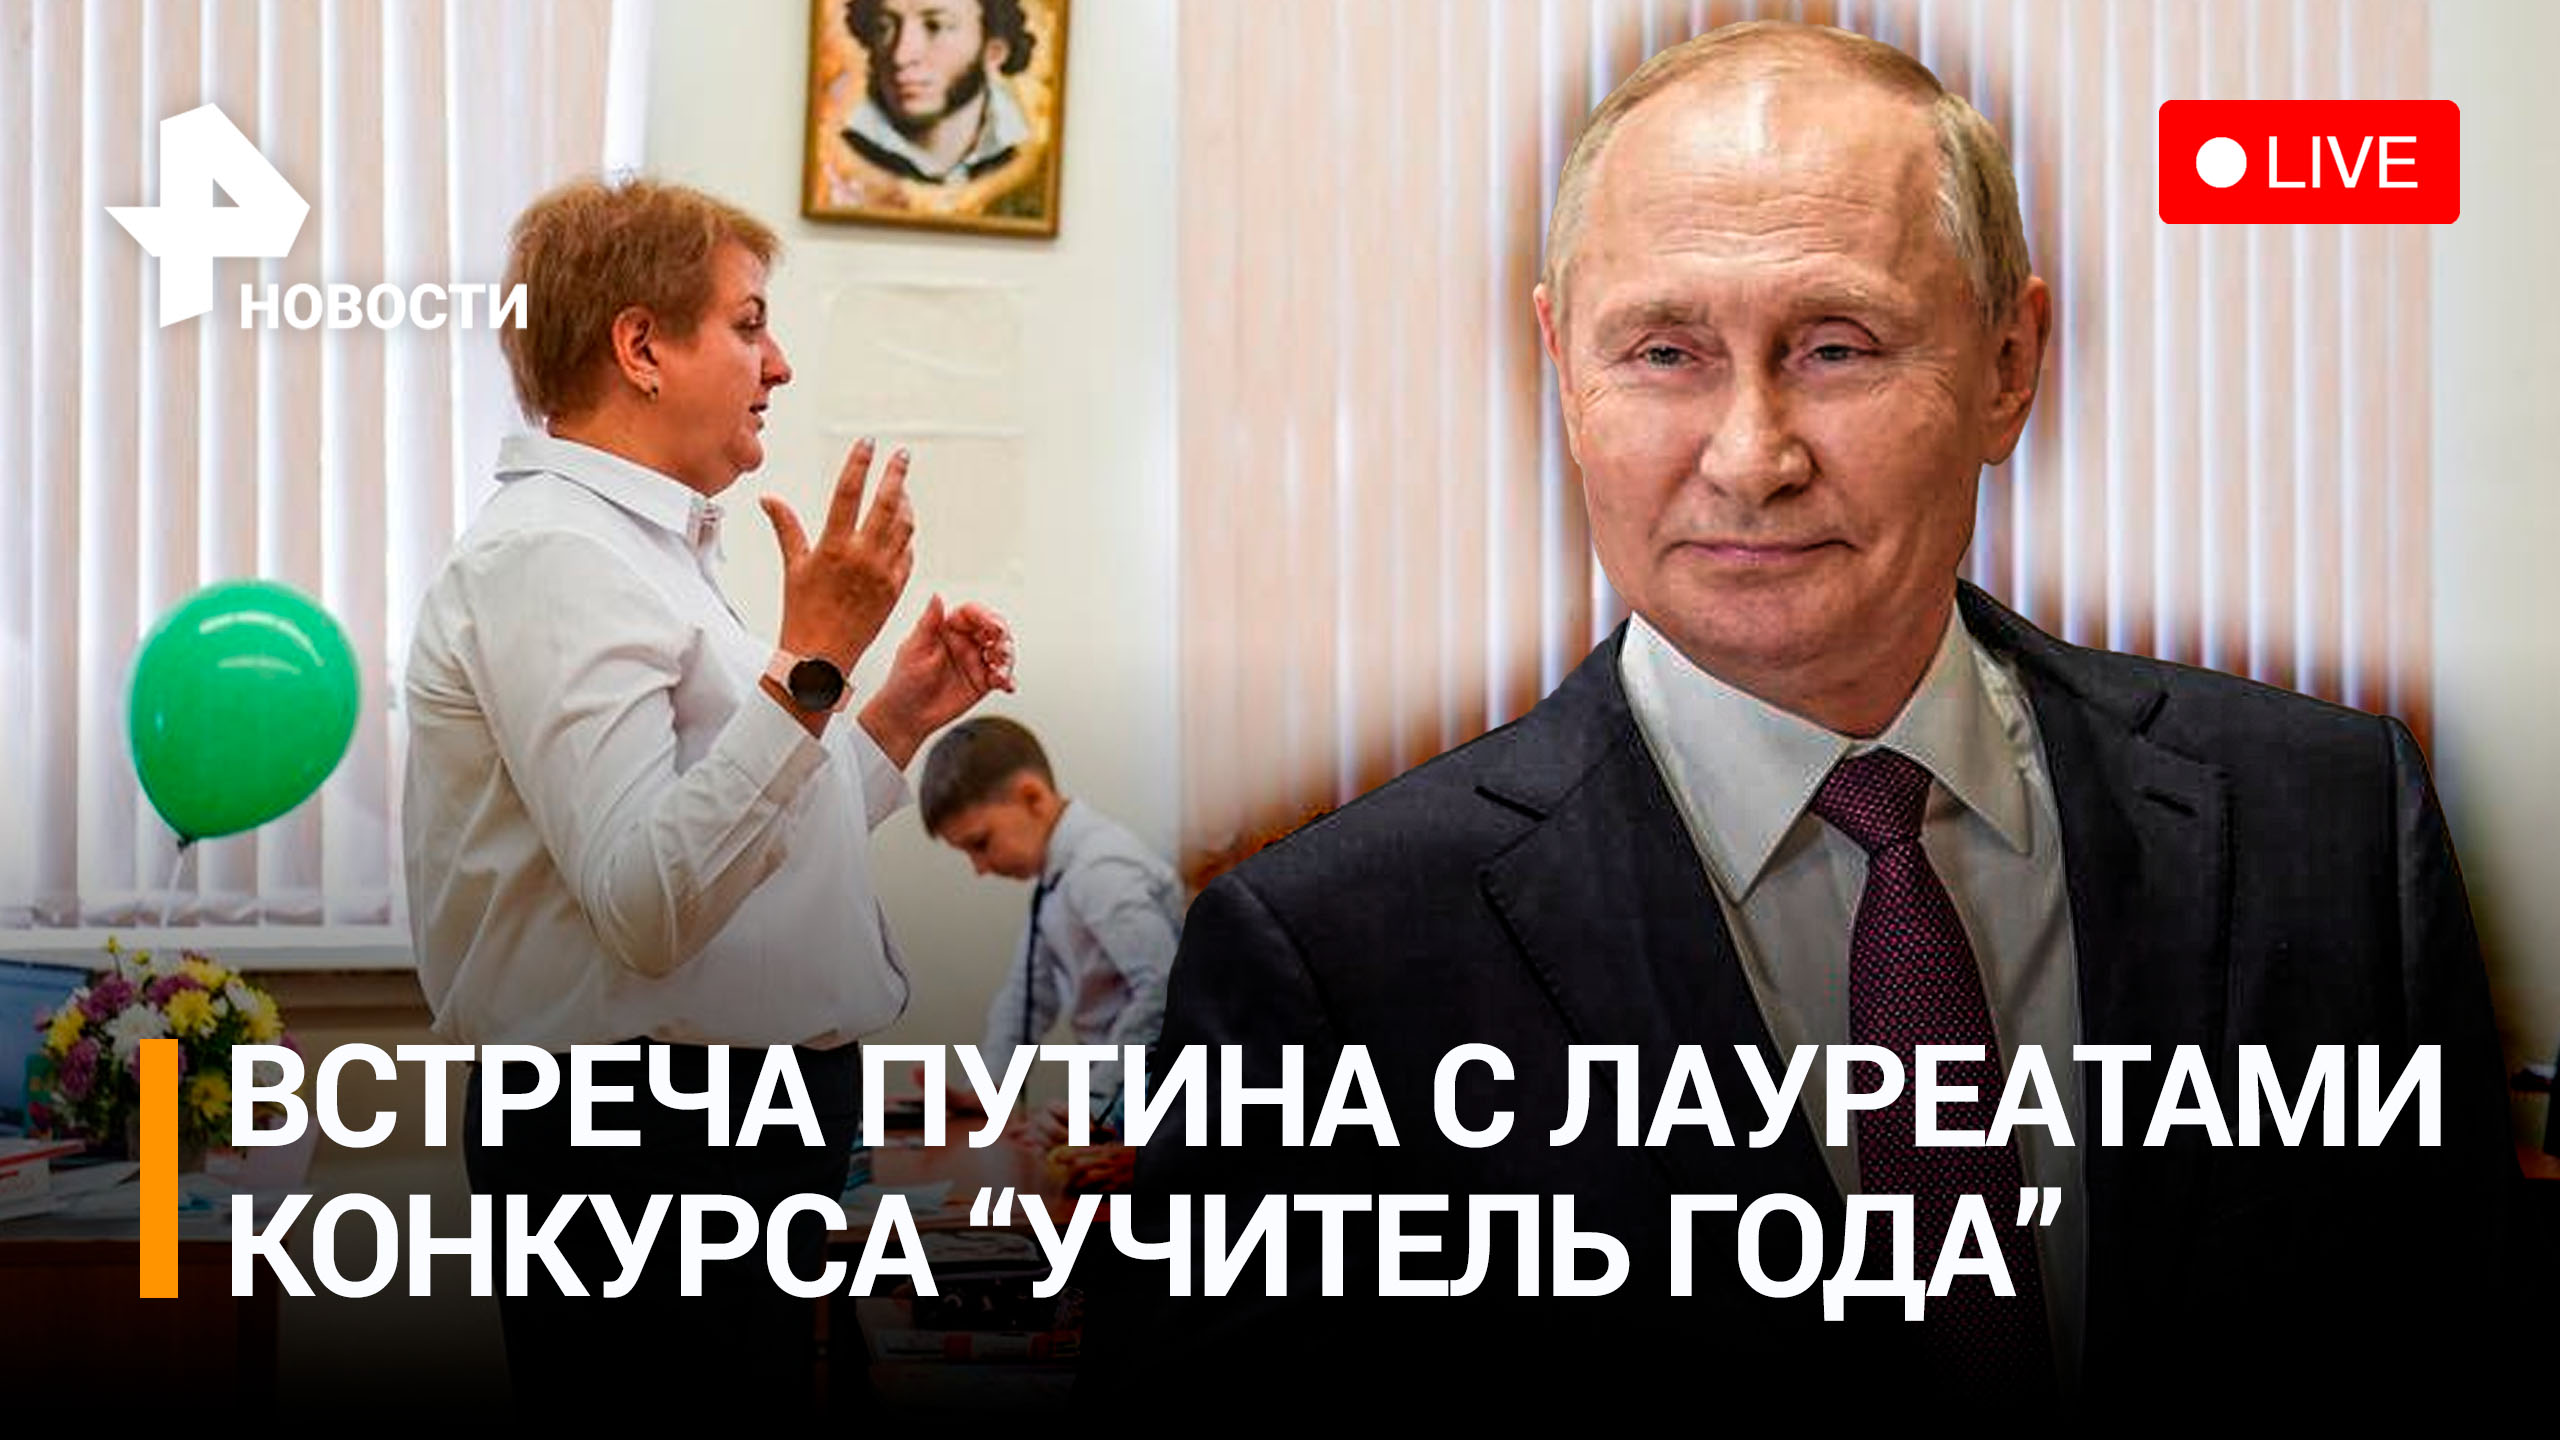 Владимир Путин на встрече с лауреатами конкурса «Учитель года». Прямая трансляция